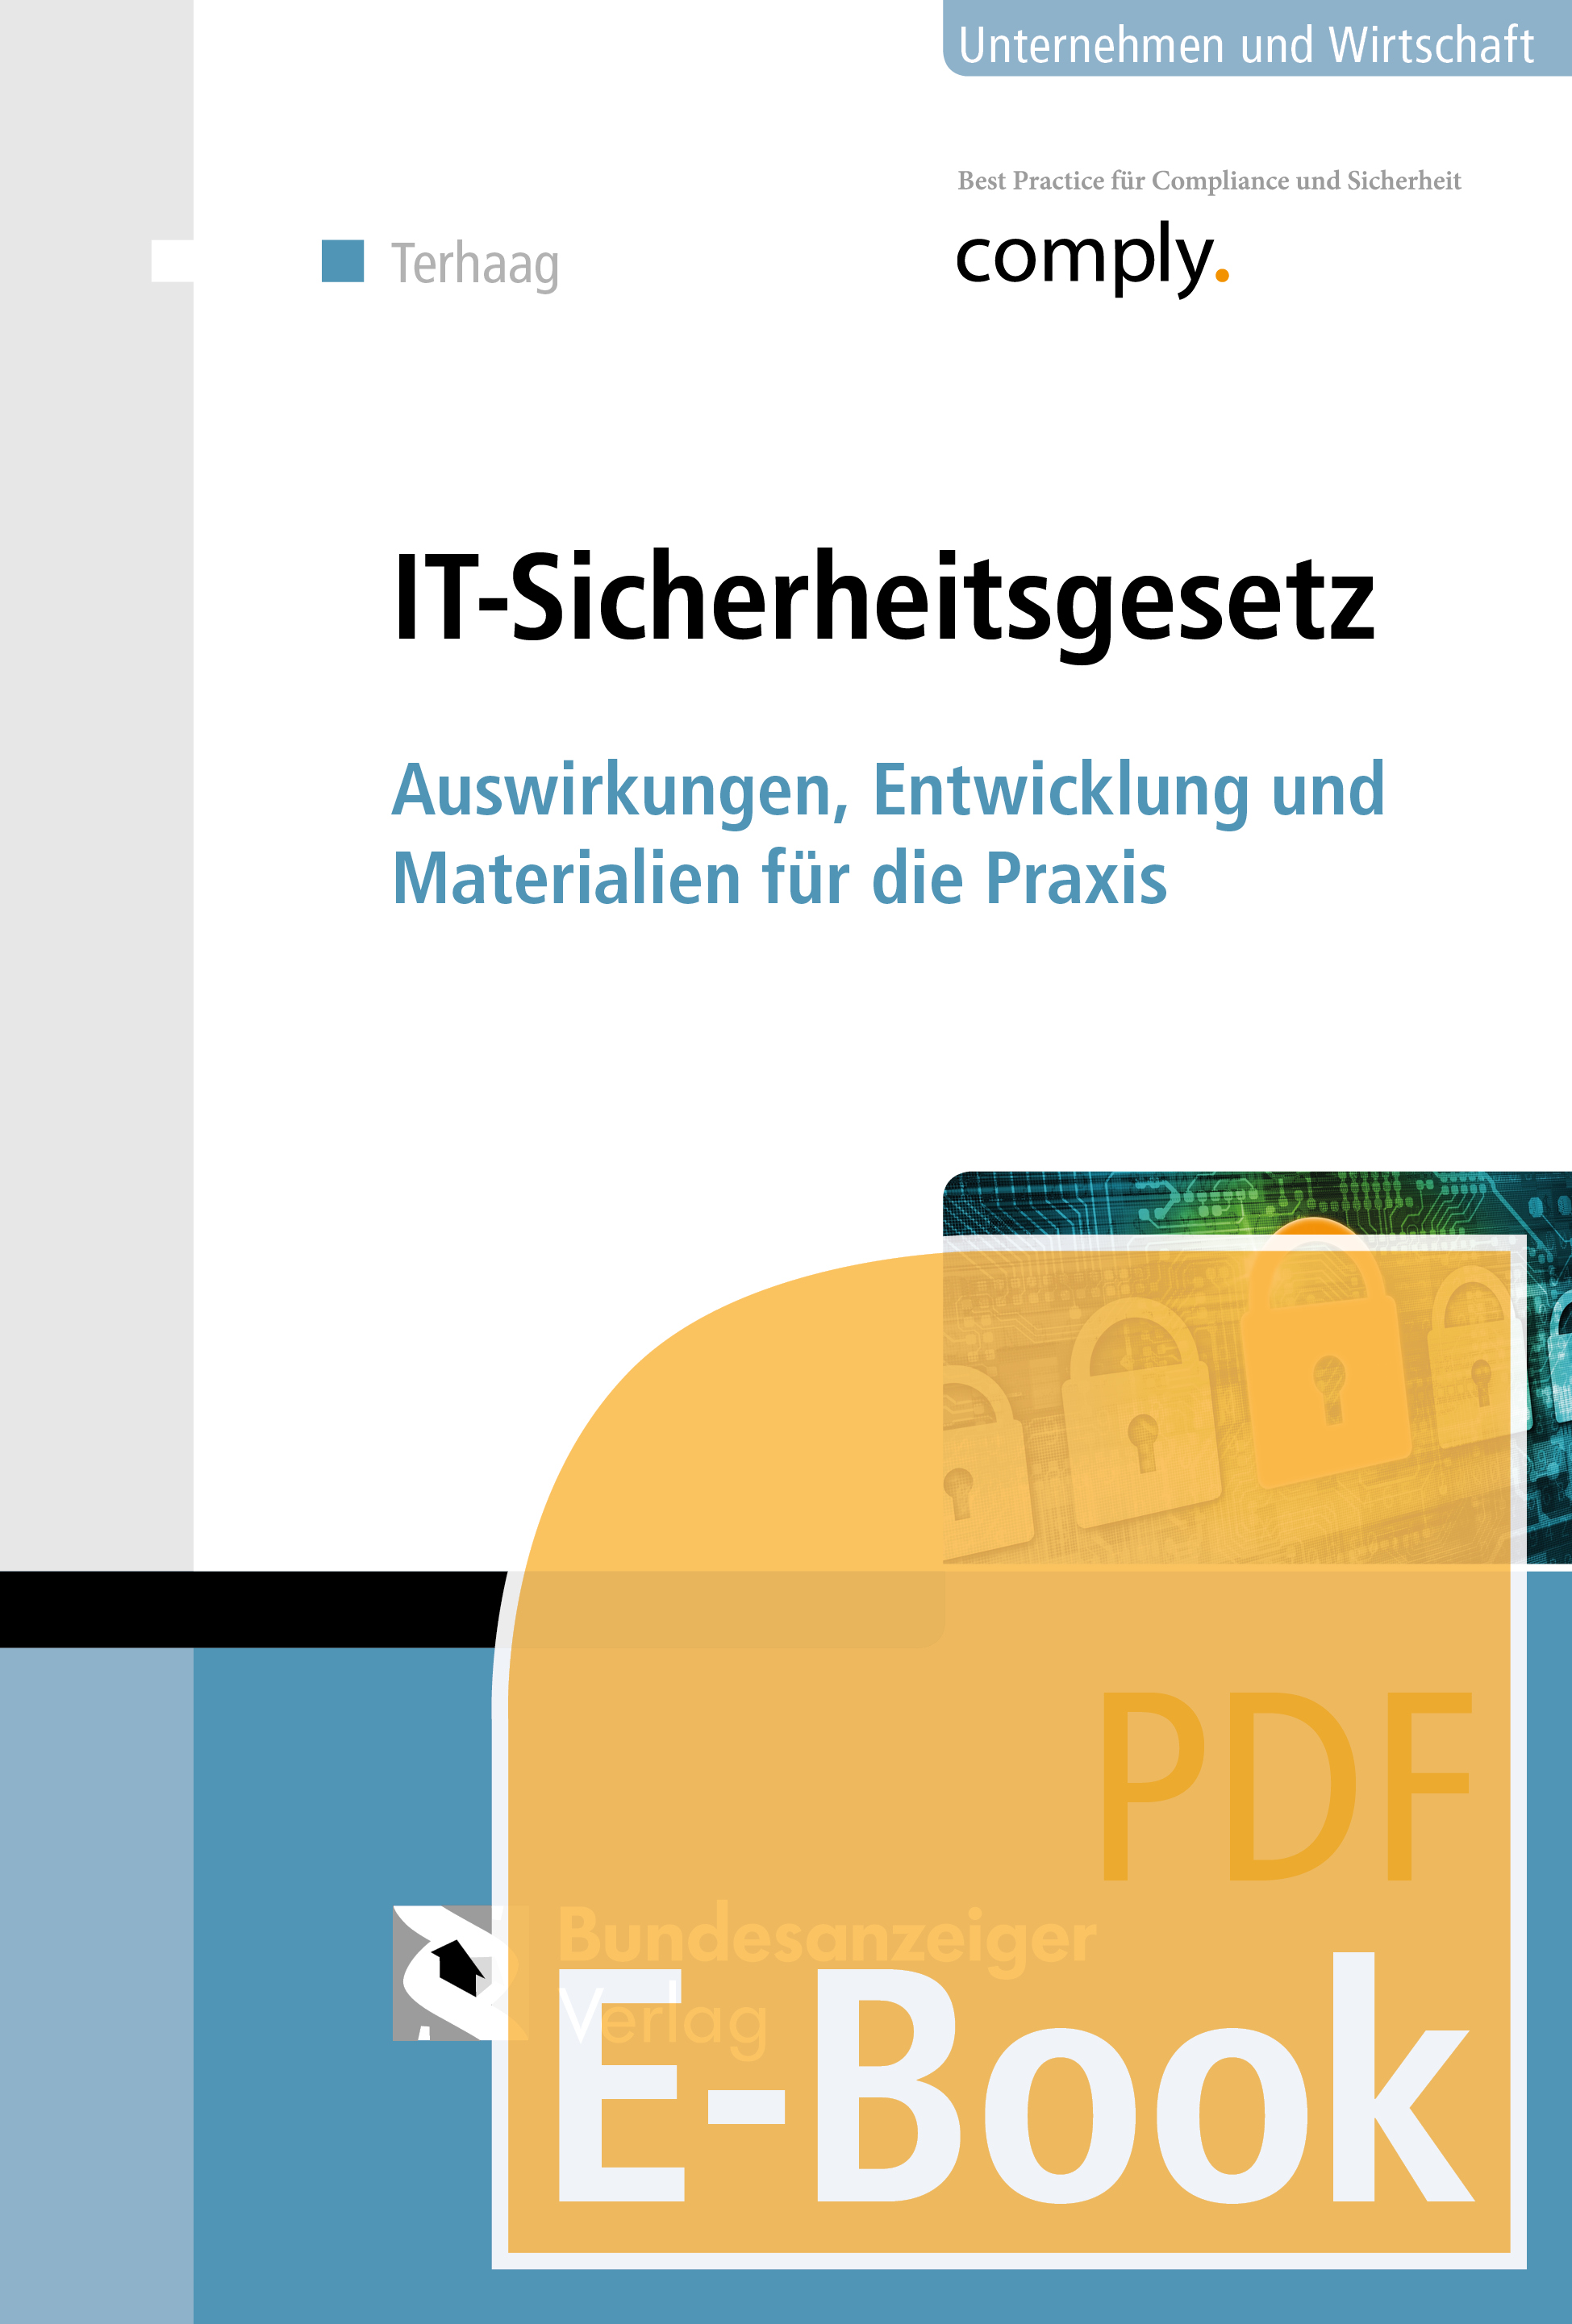 Terhaag; IT-Sicherheitsgesetz (E-Book)